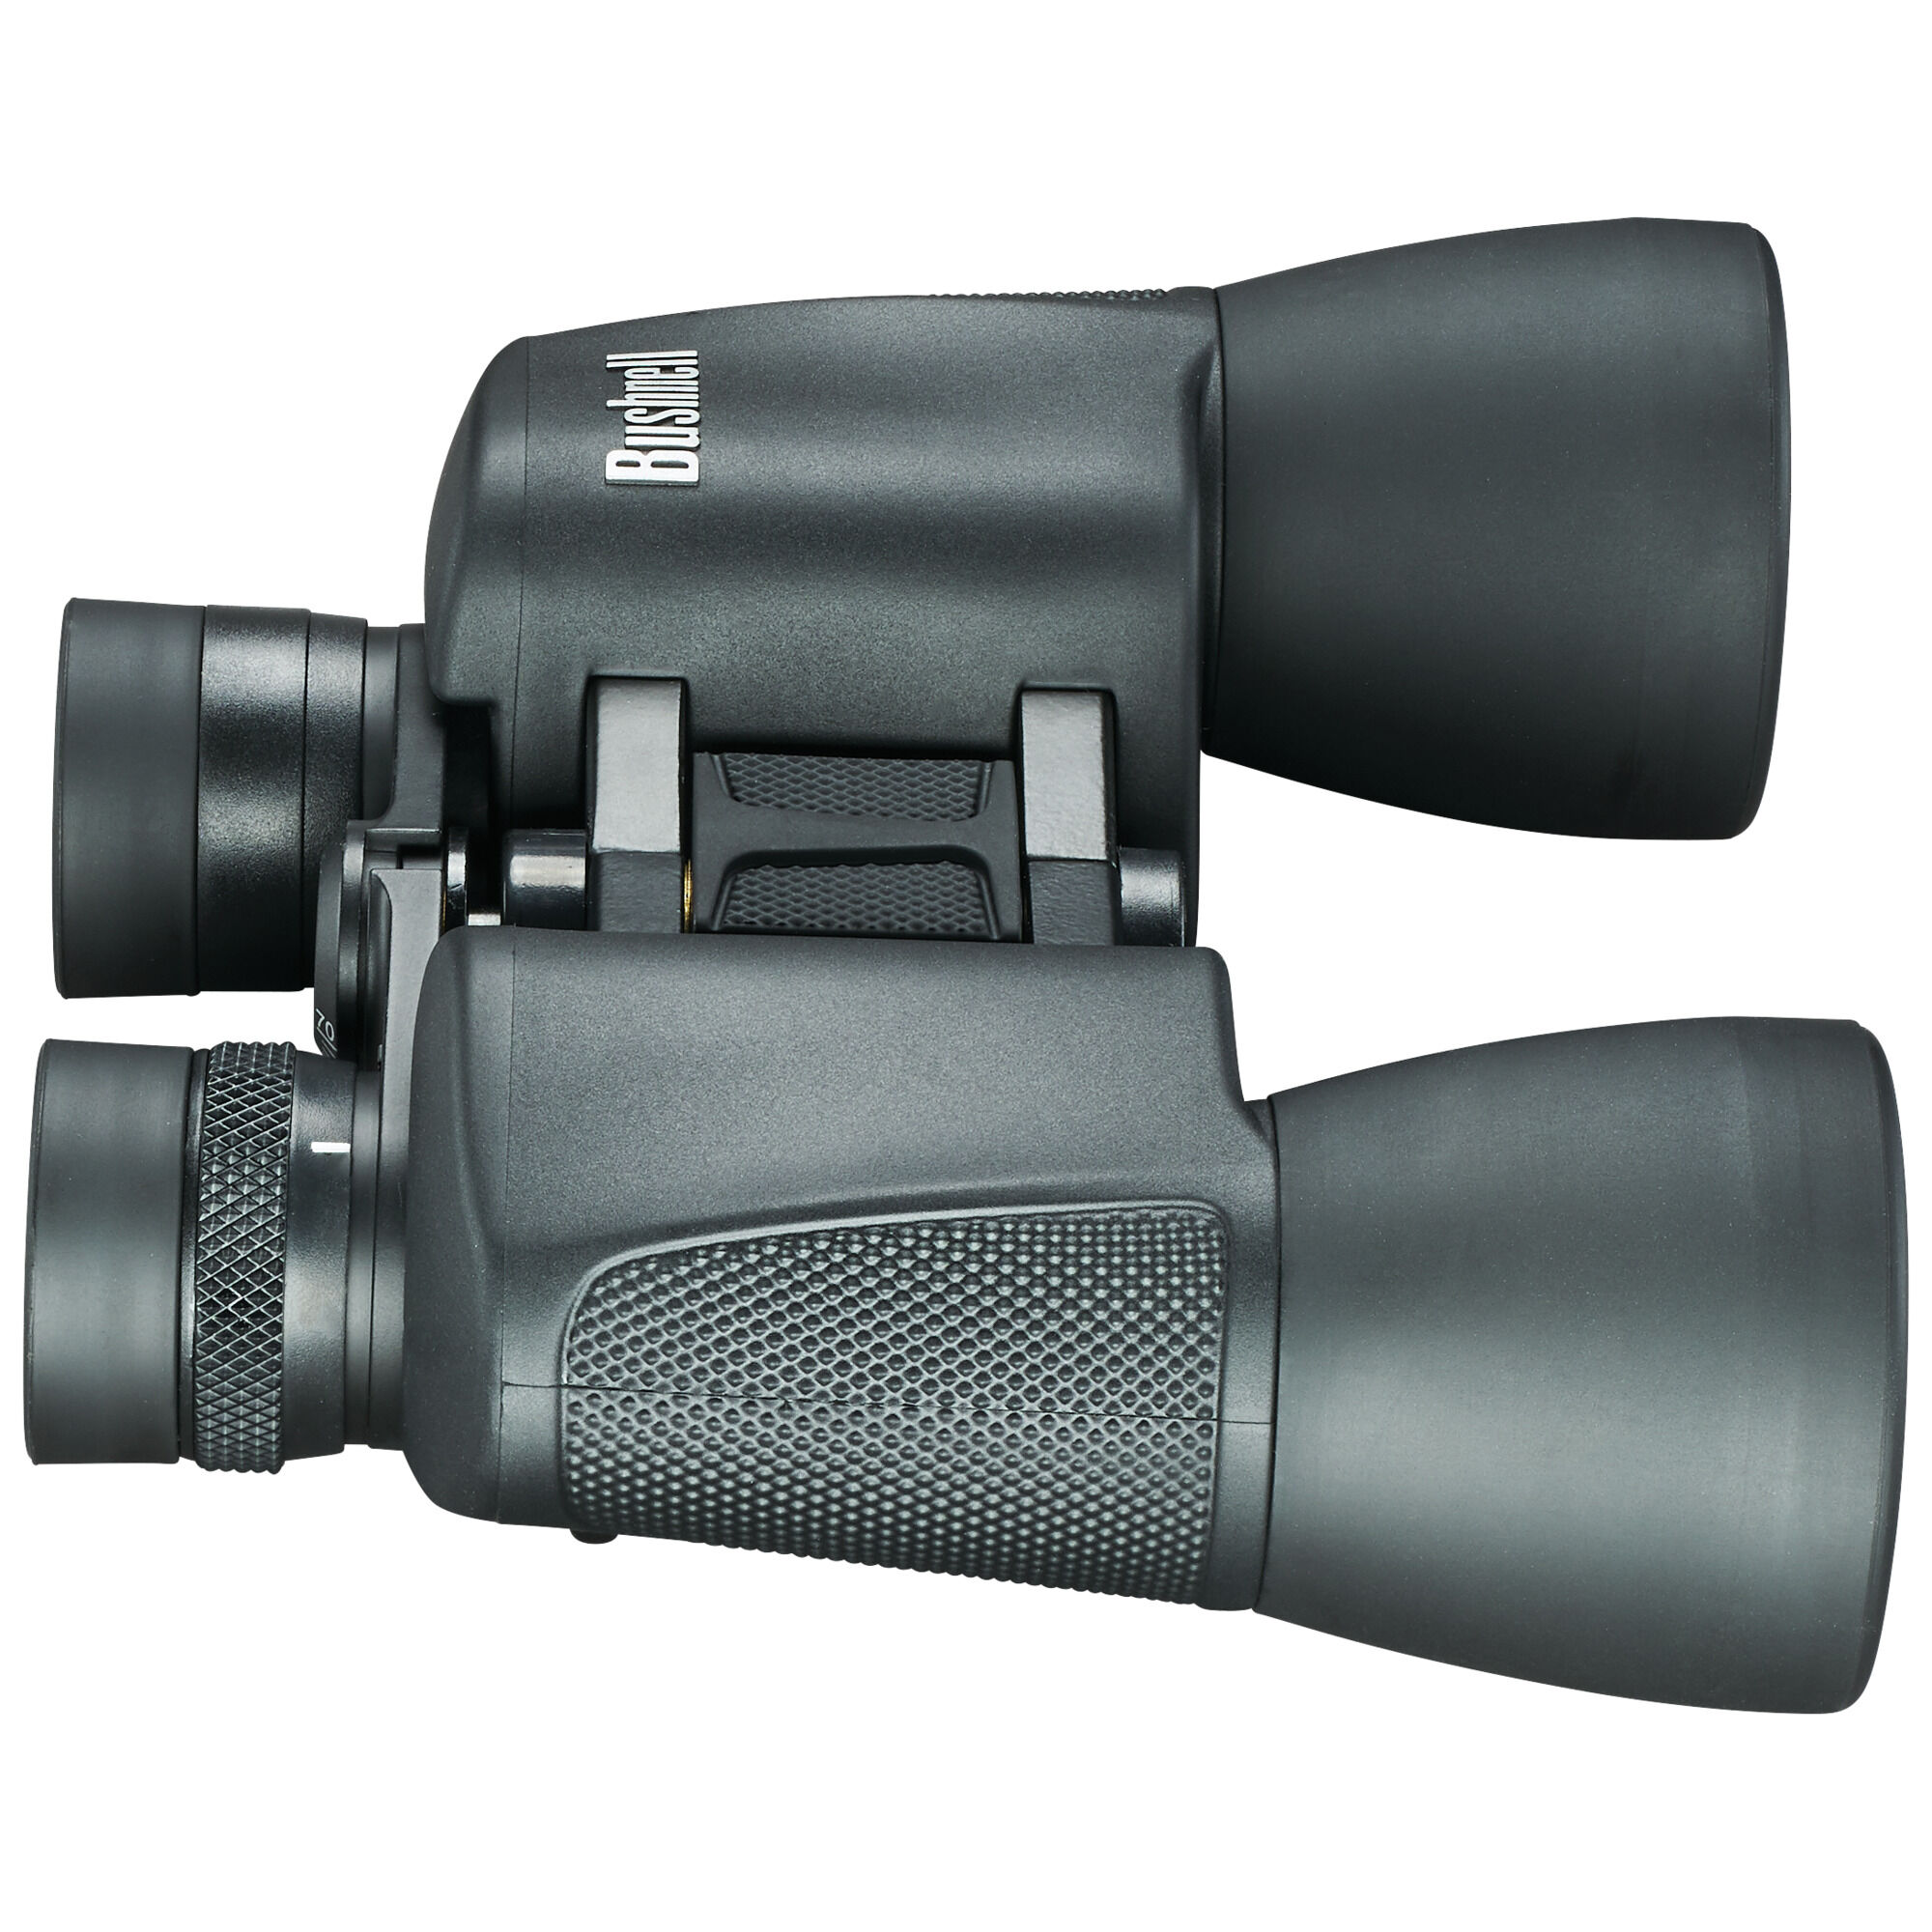 Bushnell PowerView 10x50mm BK-7 Porro Prism Instafocus Binoculars 131055 